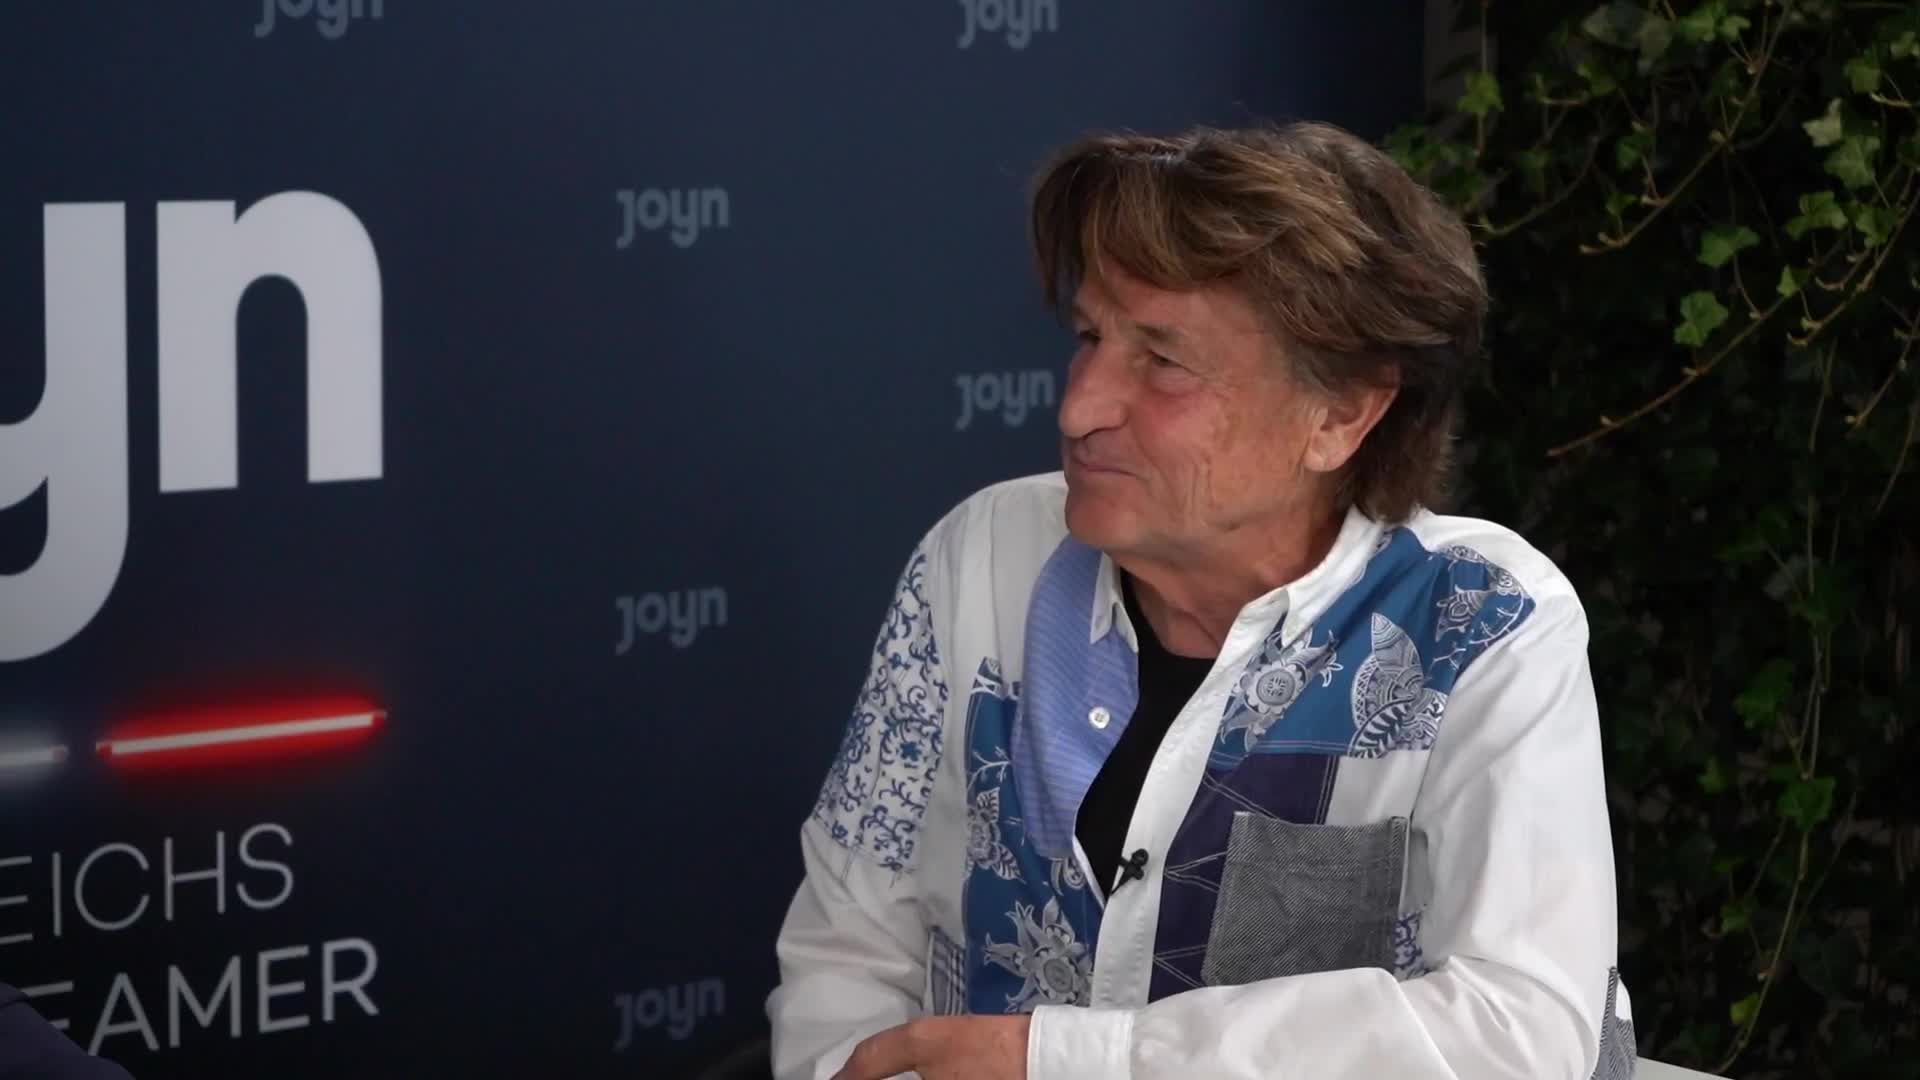 JOYN-Videocast mit Peter Gastberger